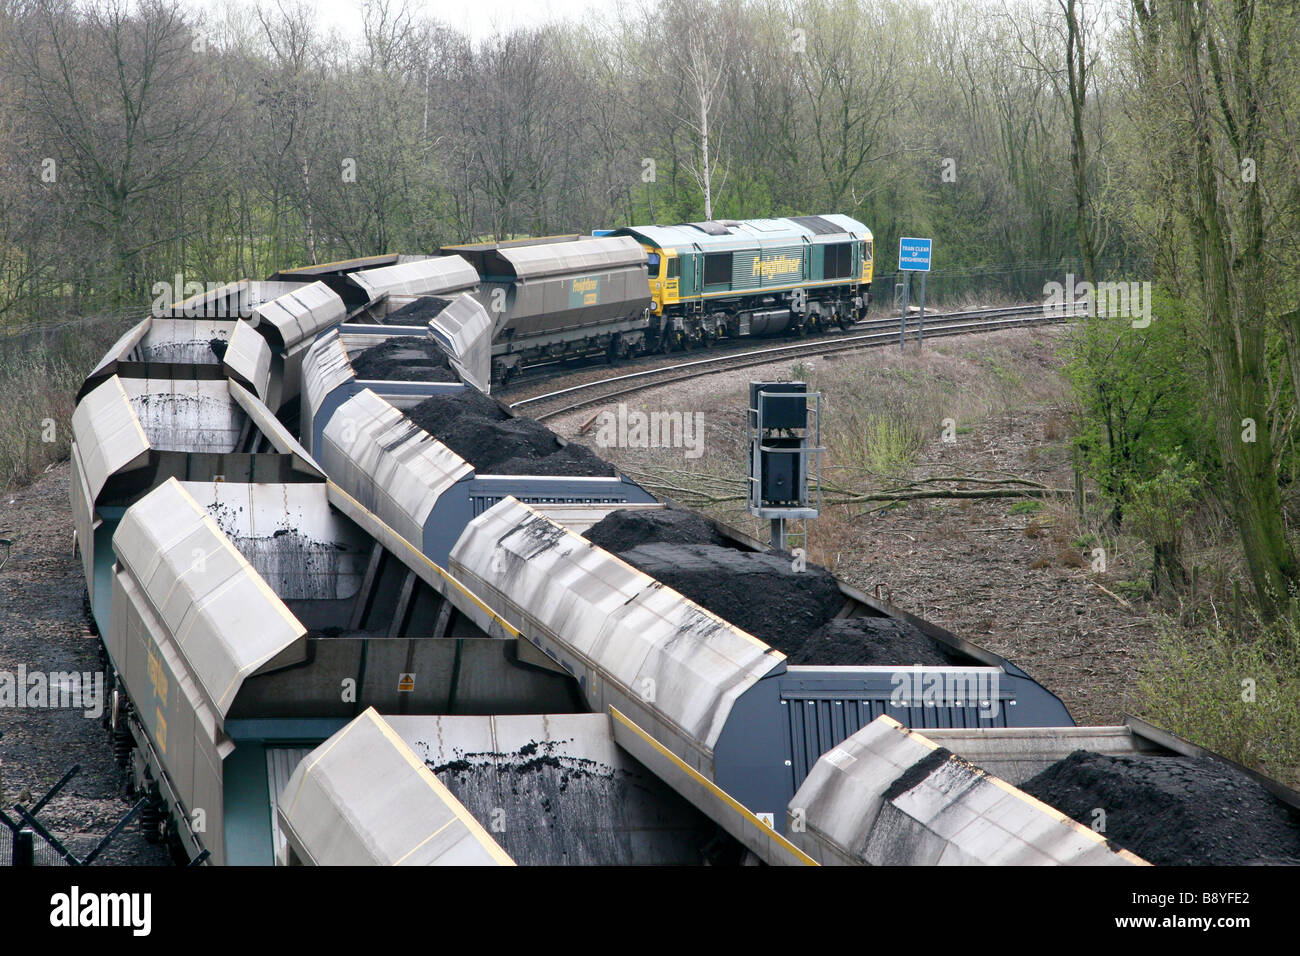 Un train part de charbon Freightliner Drax power station après avoir déchargé son charbon, comme un autre train chargés de charbon arrive. Banque D'Images